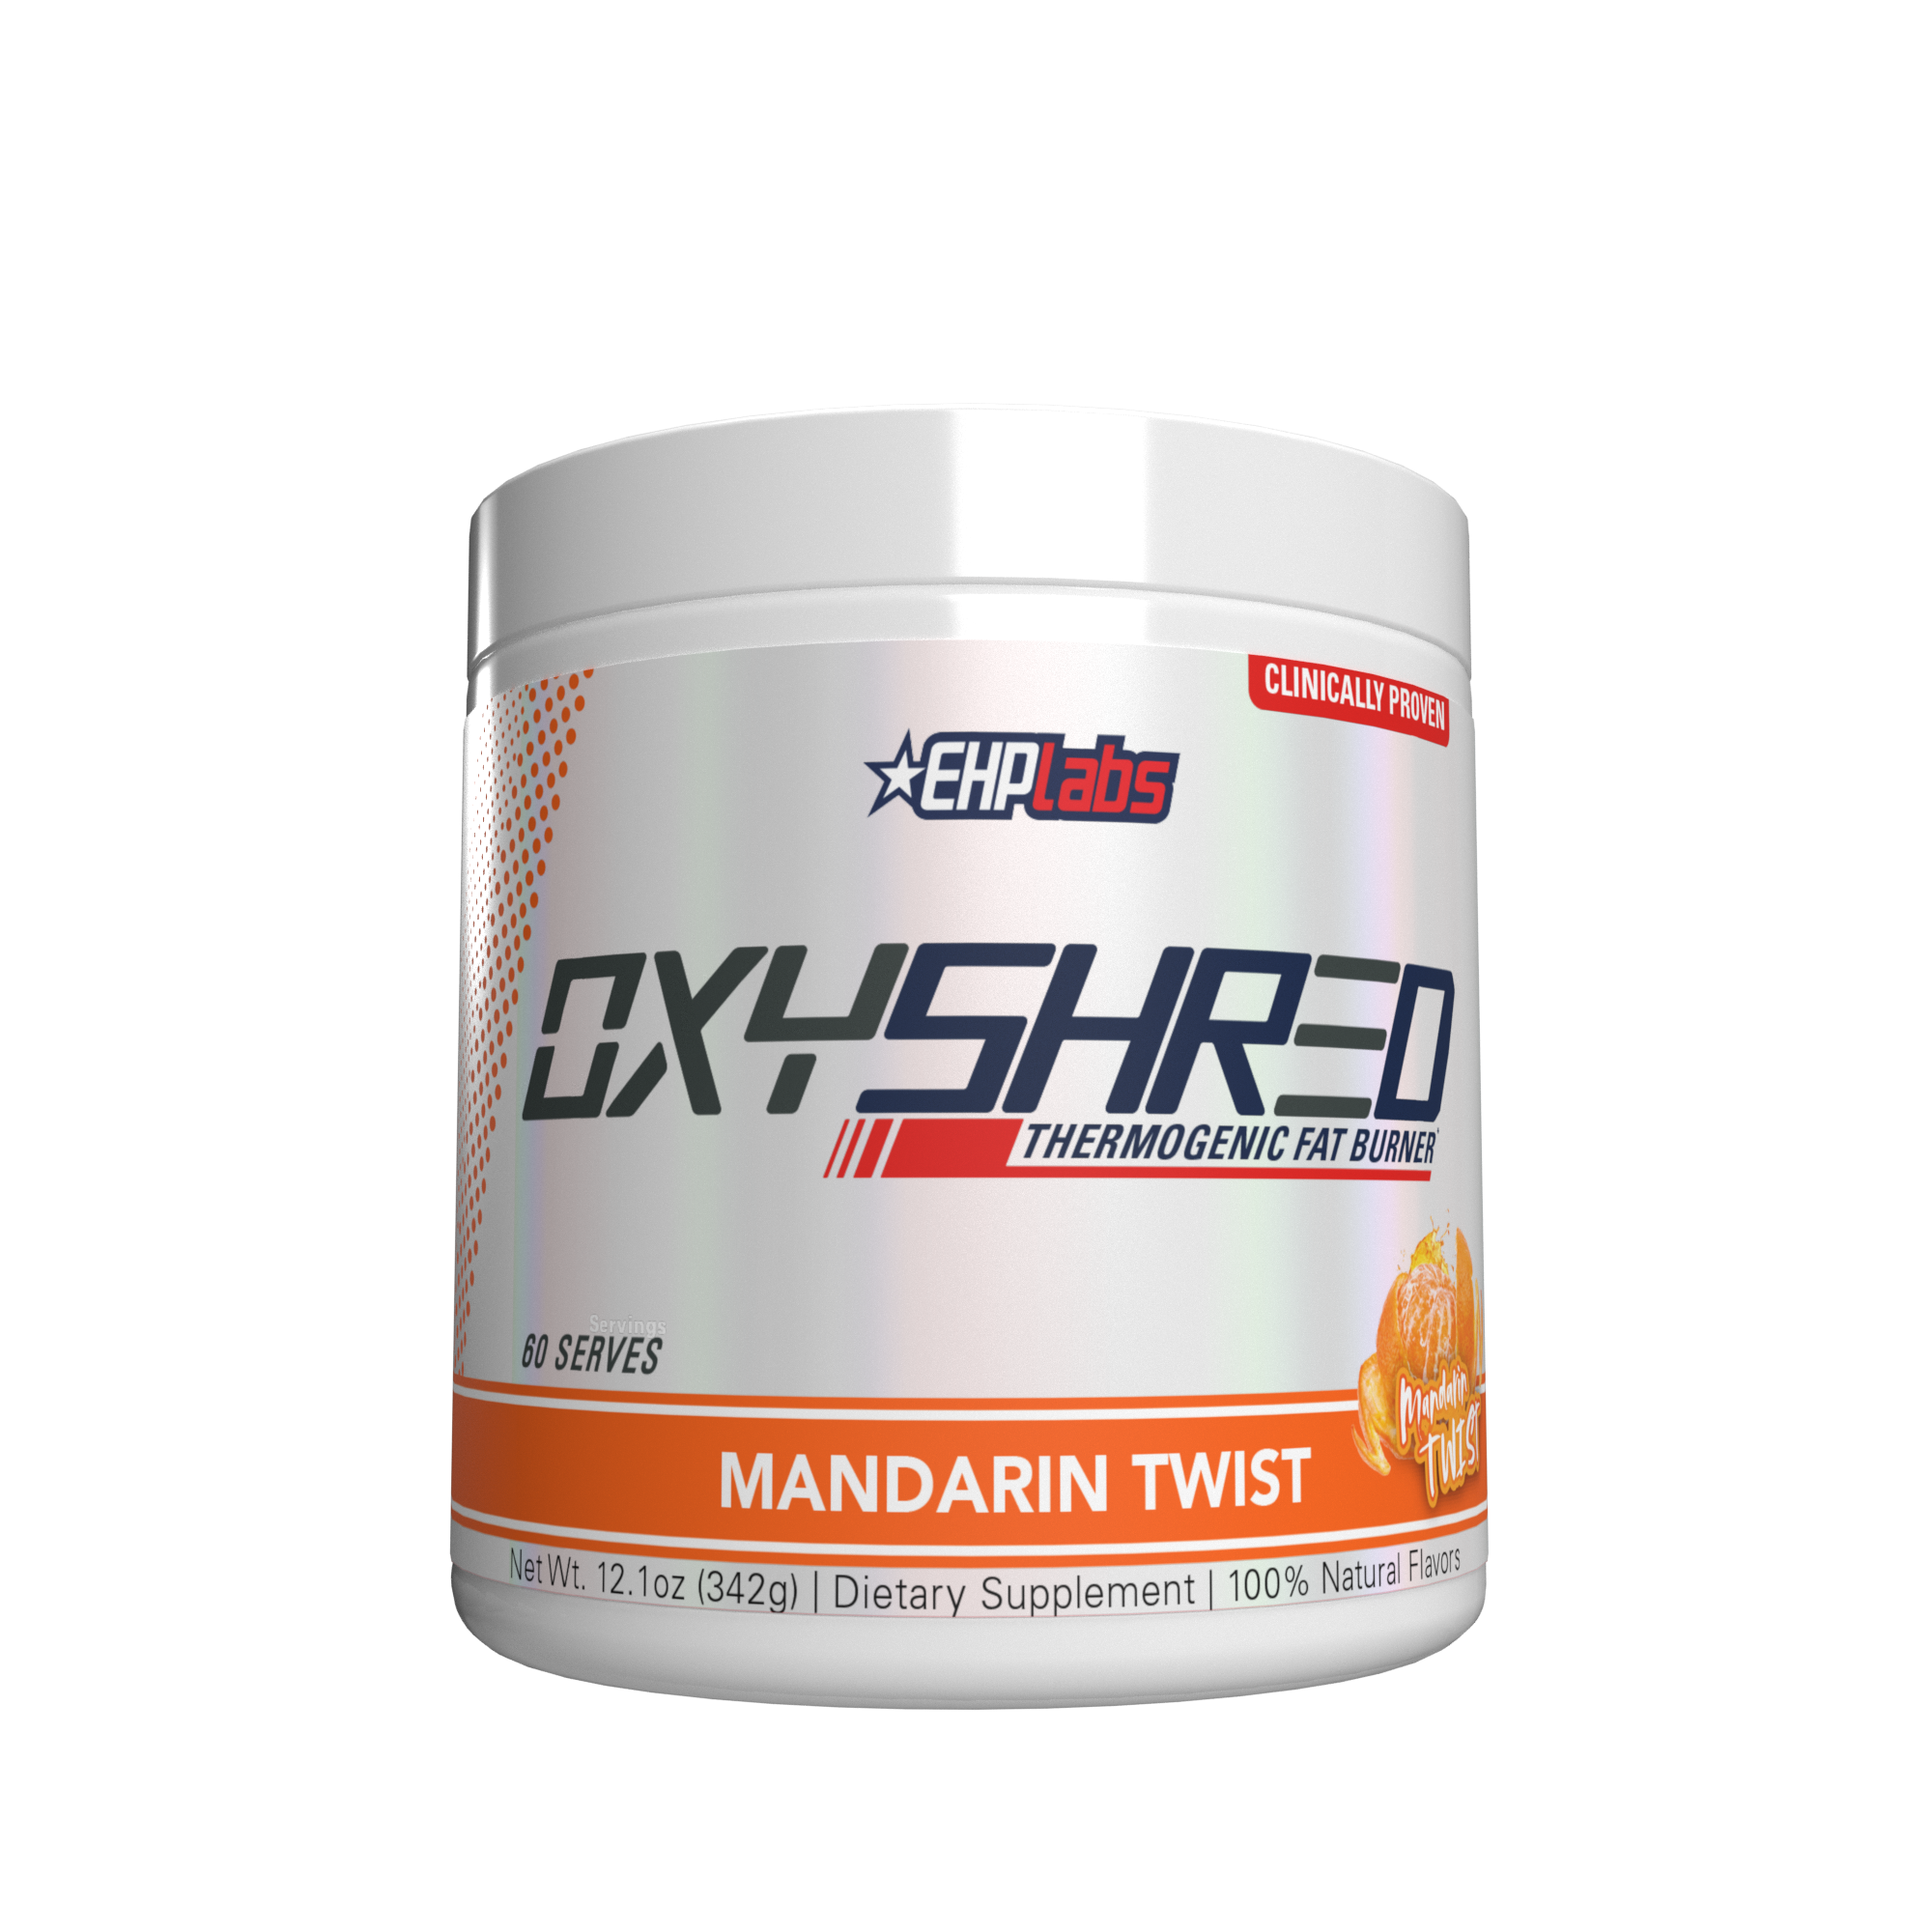 Mandarin Twist OxyShred